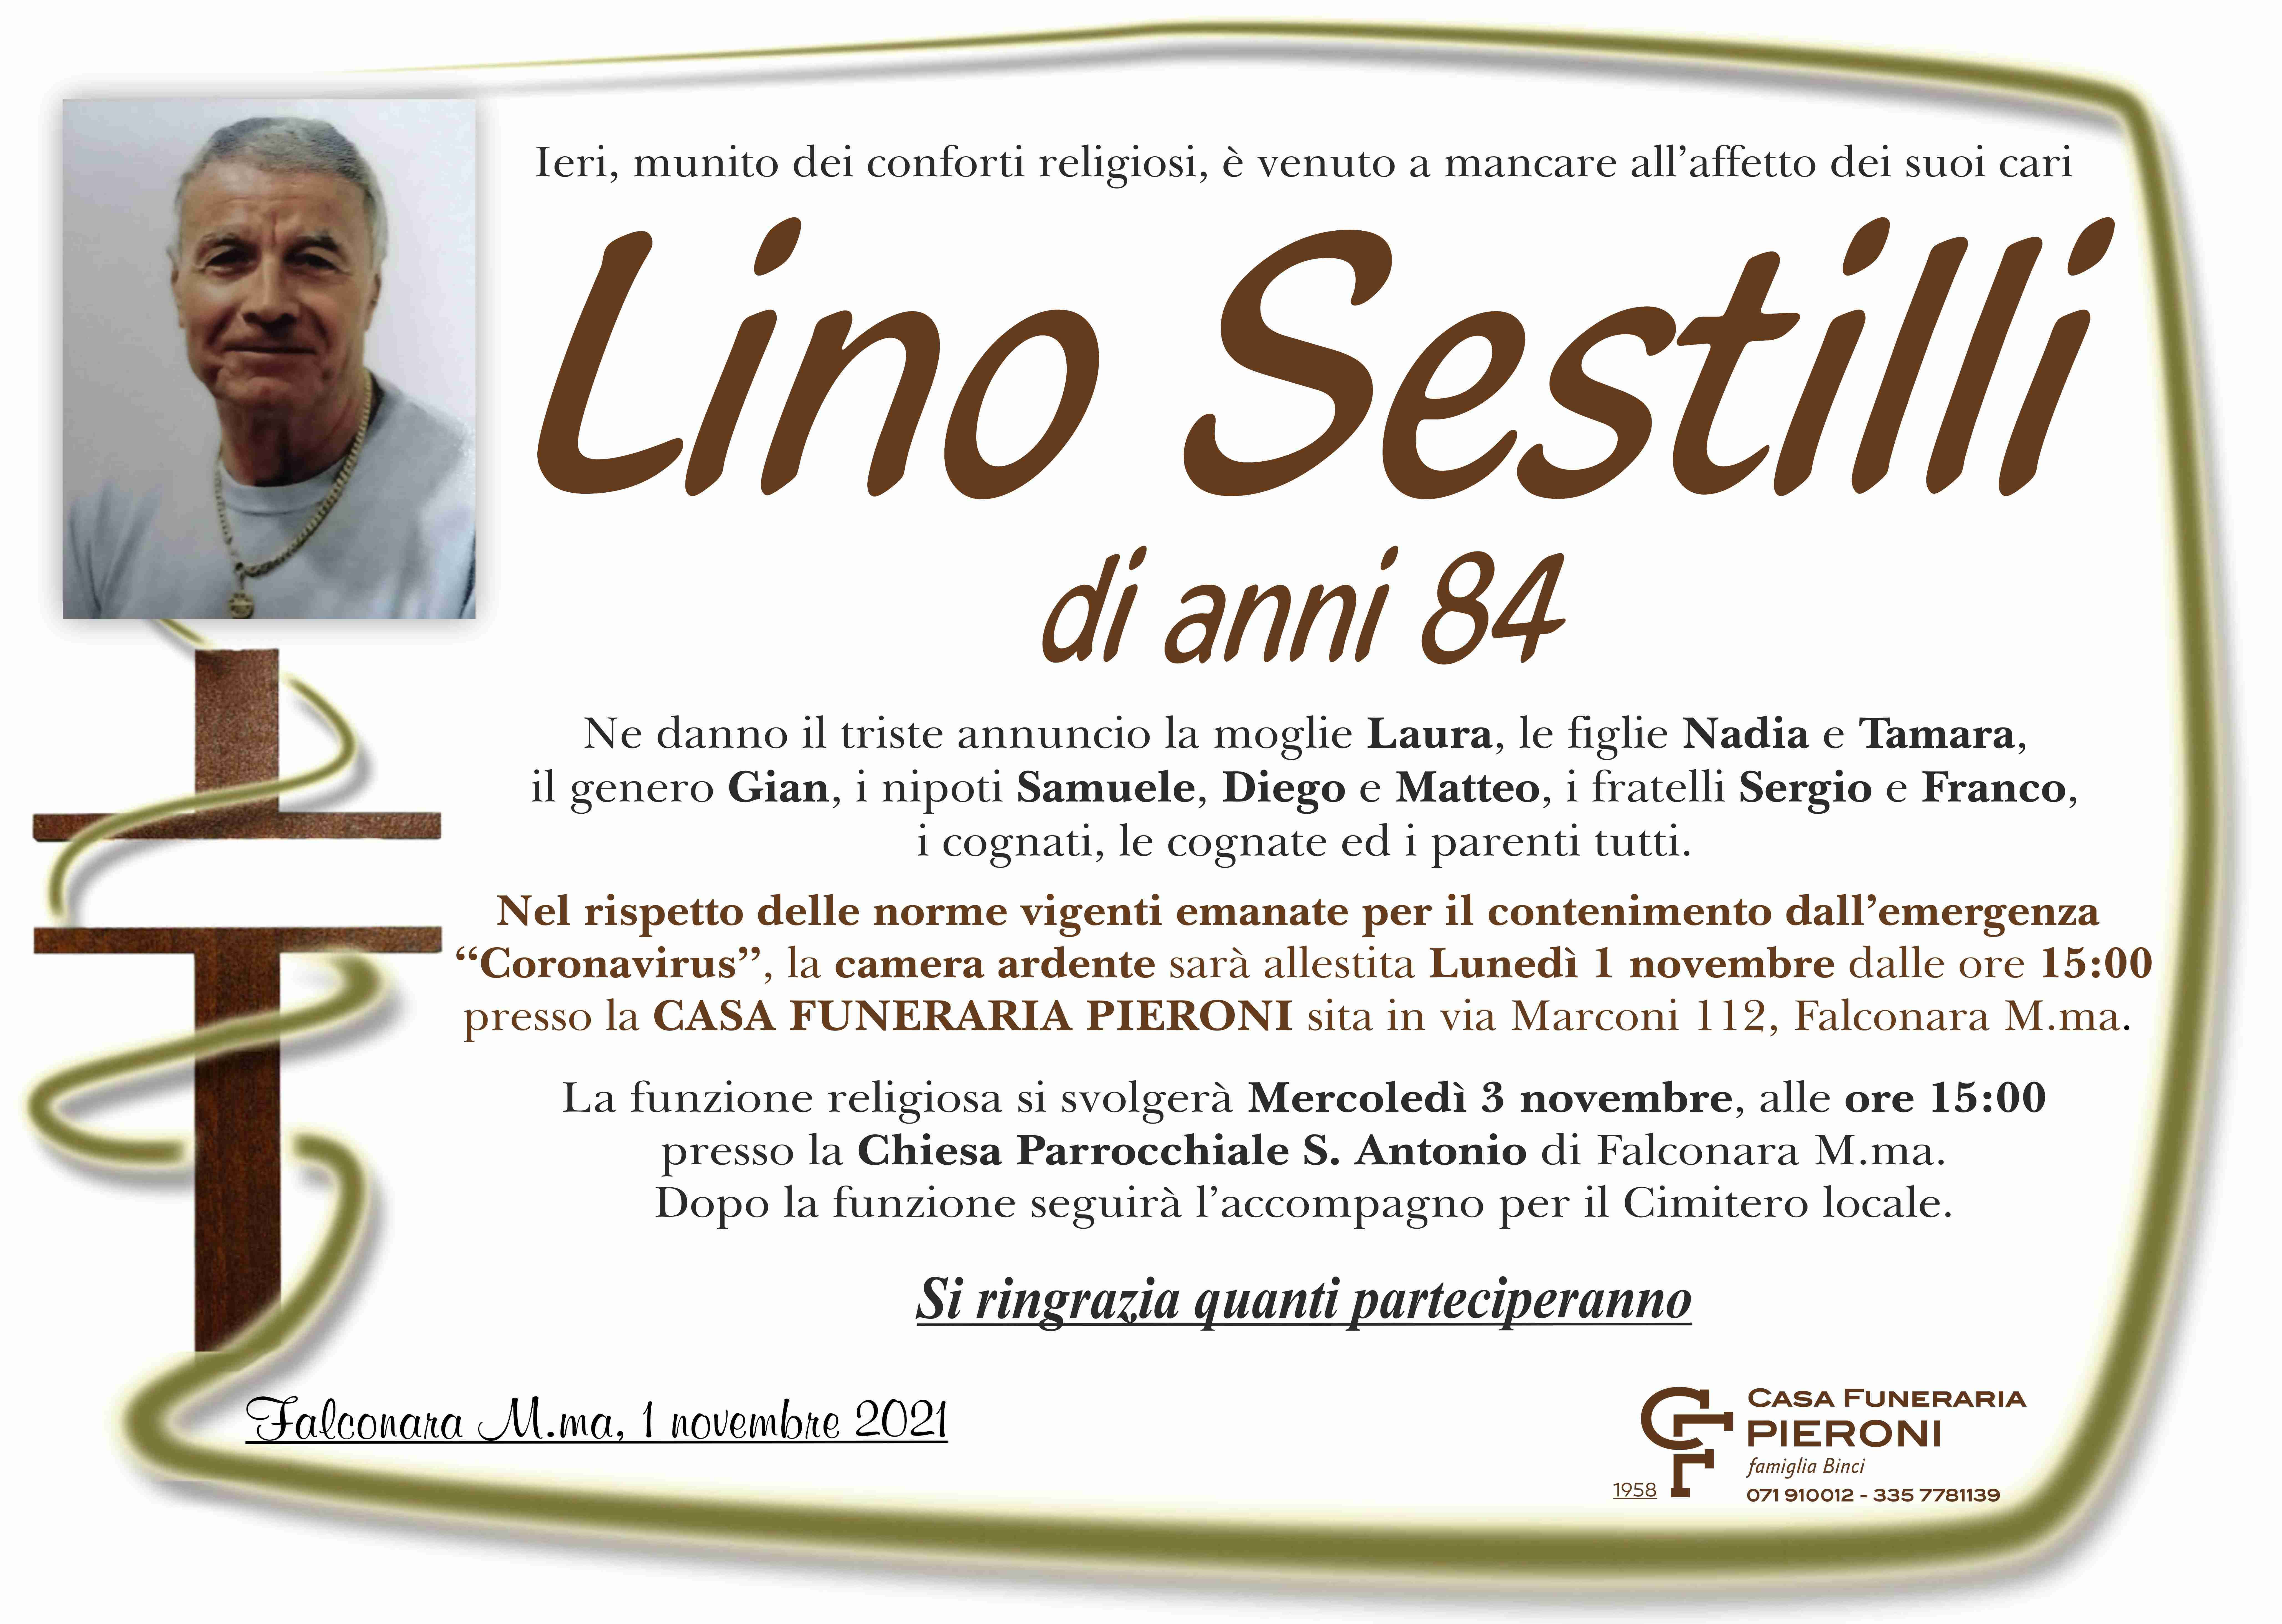 Lino Sestilli